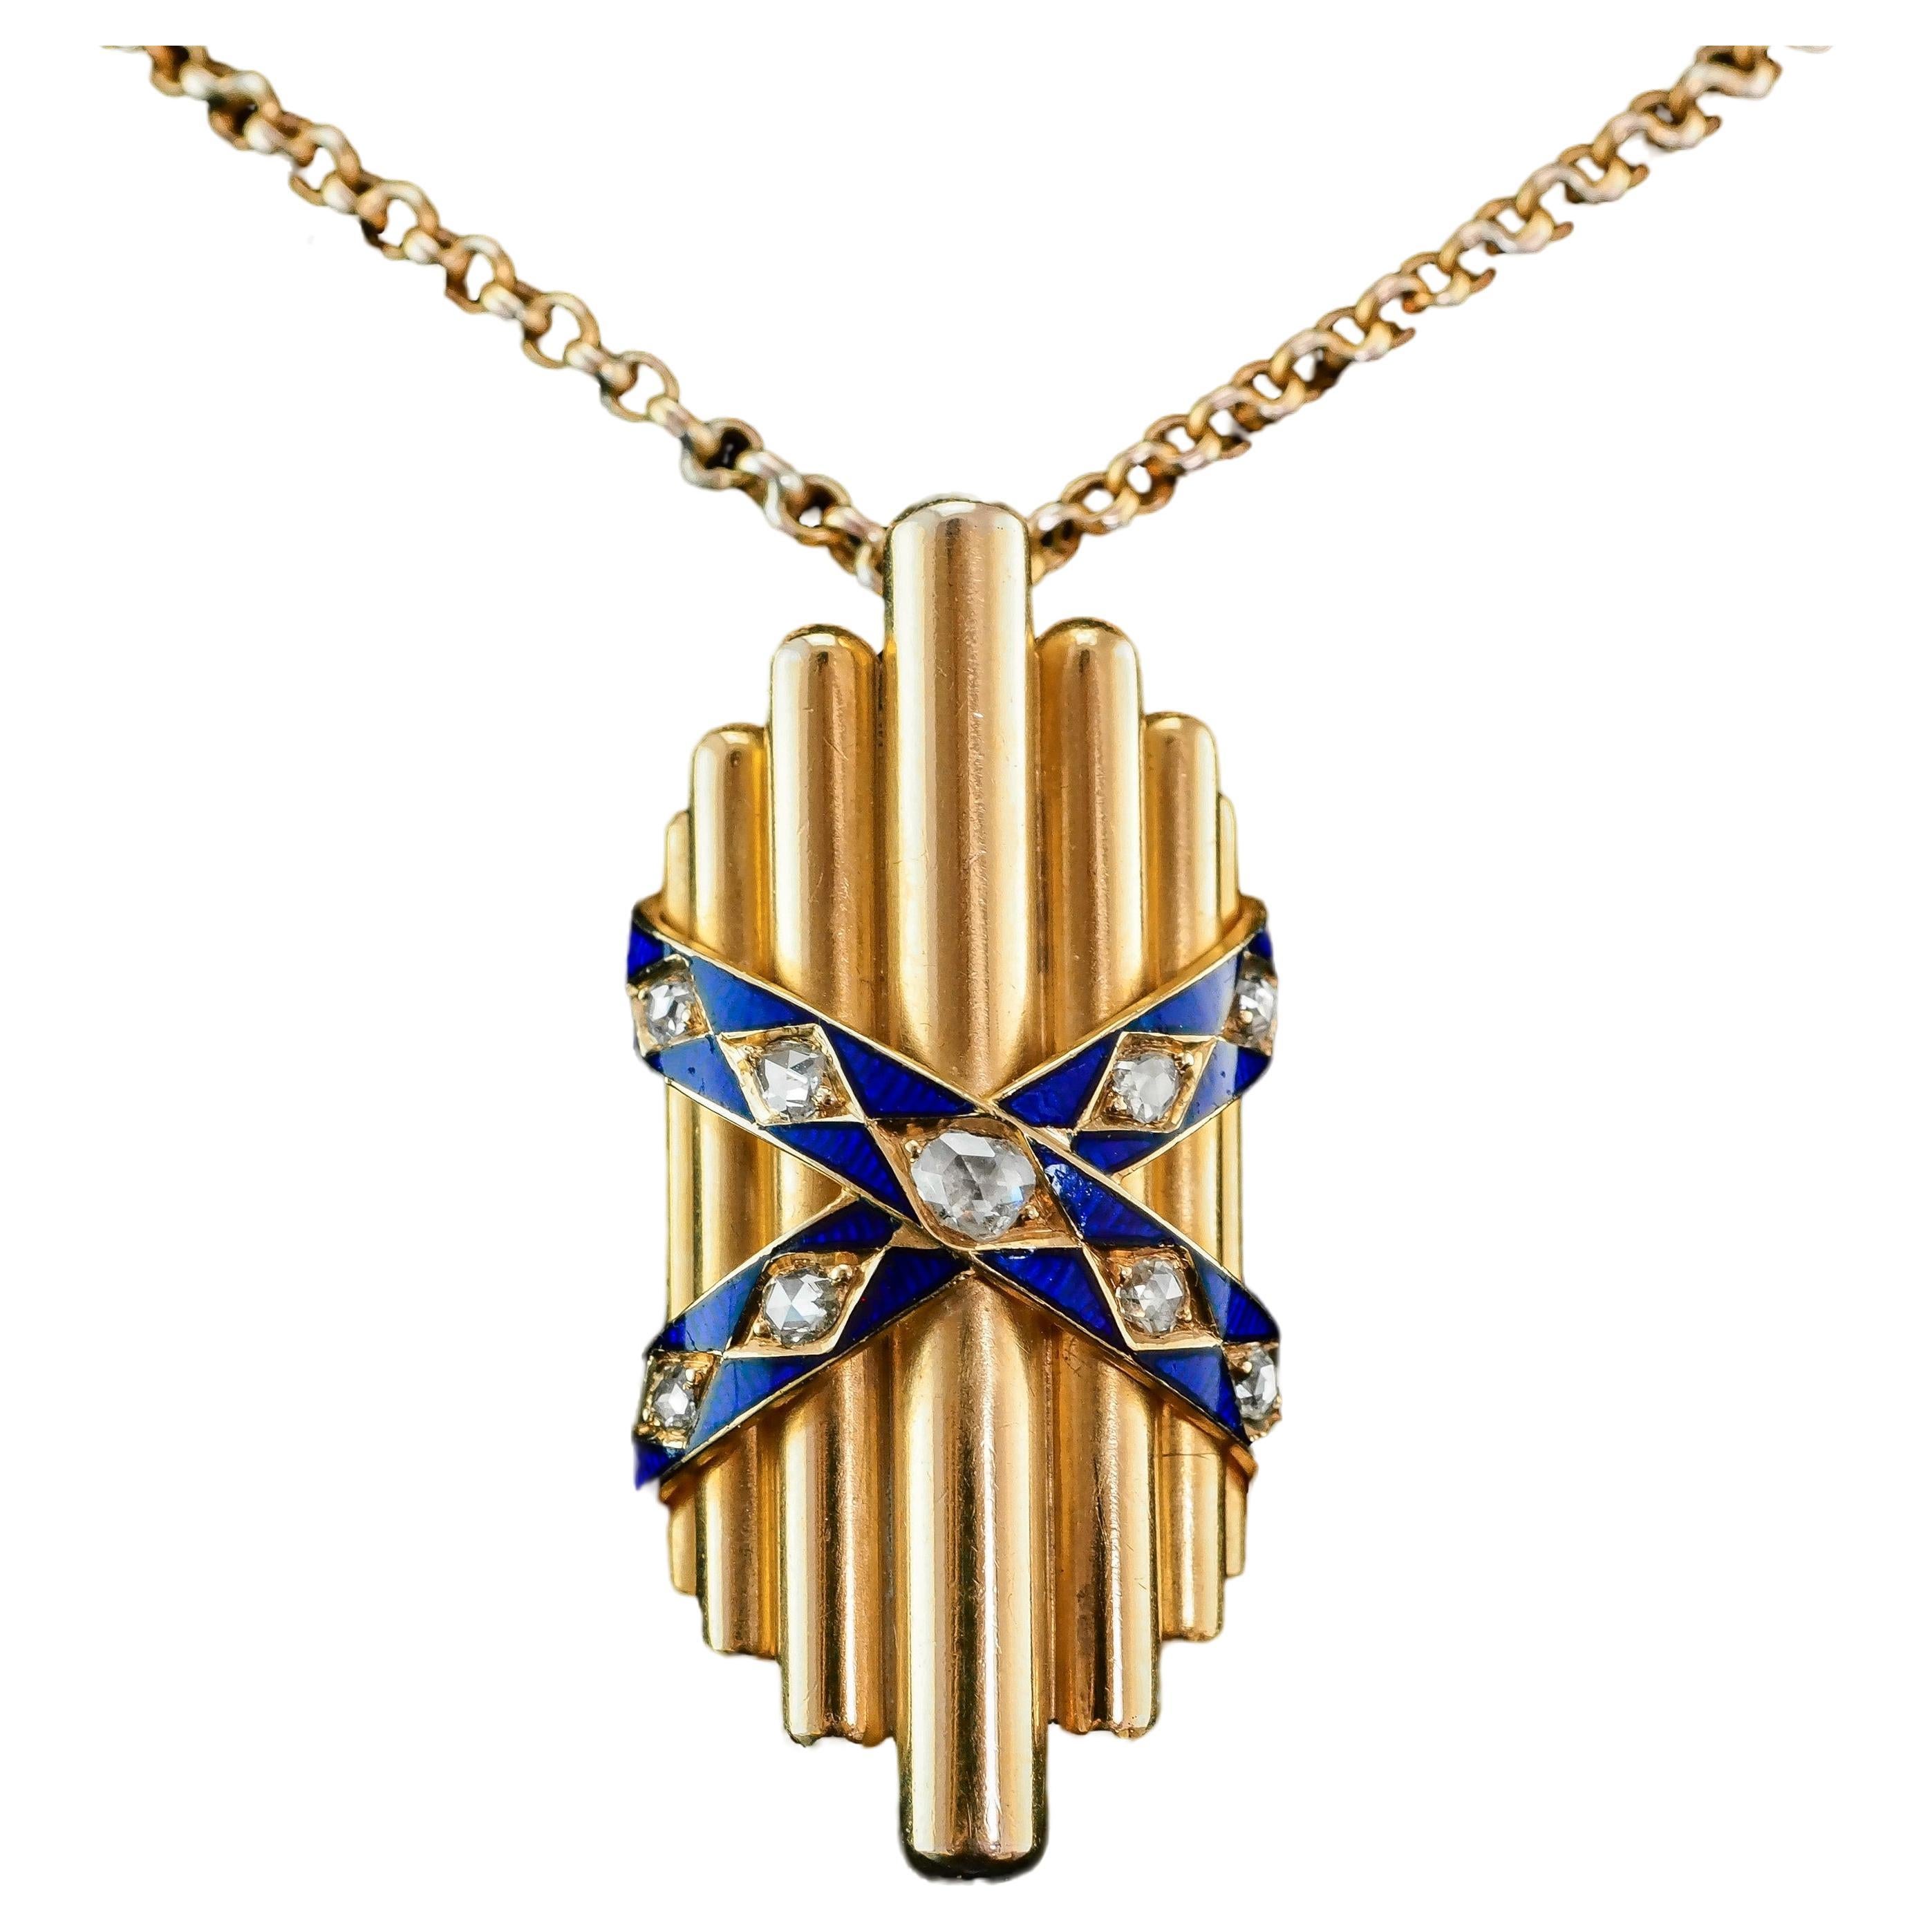 Antique 18K Gold Diamond Rose Cut Pendant Necklace with Blue Enamel - c.1880